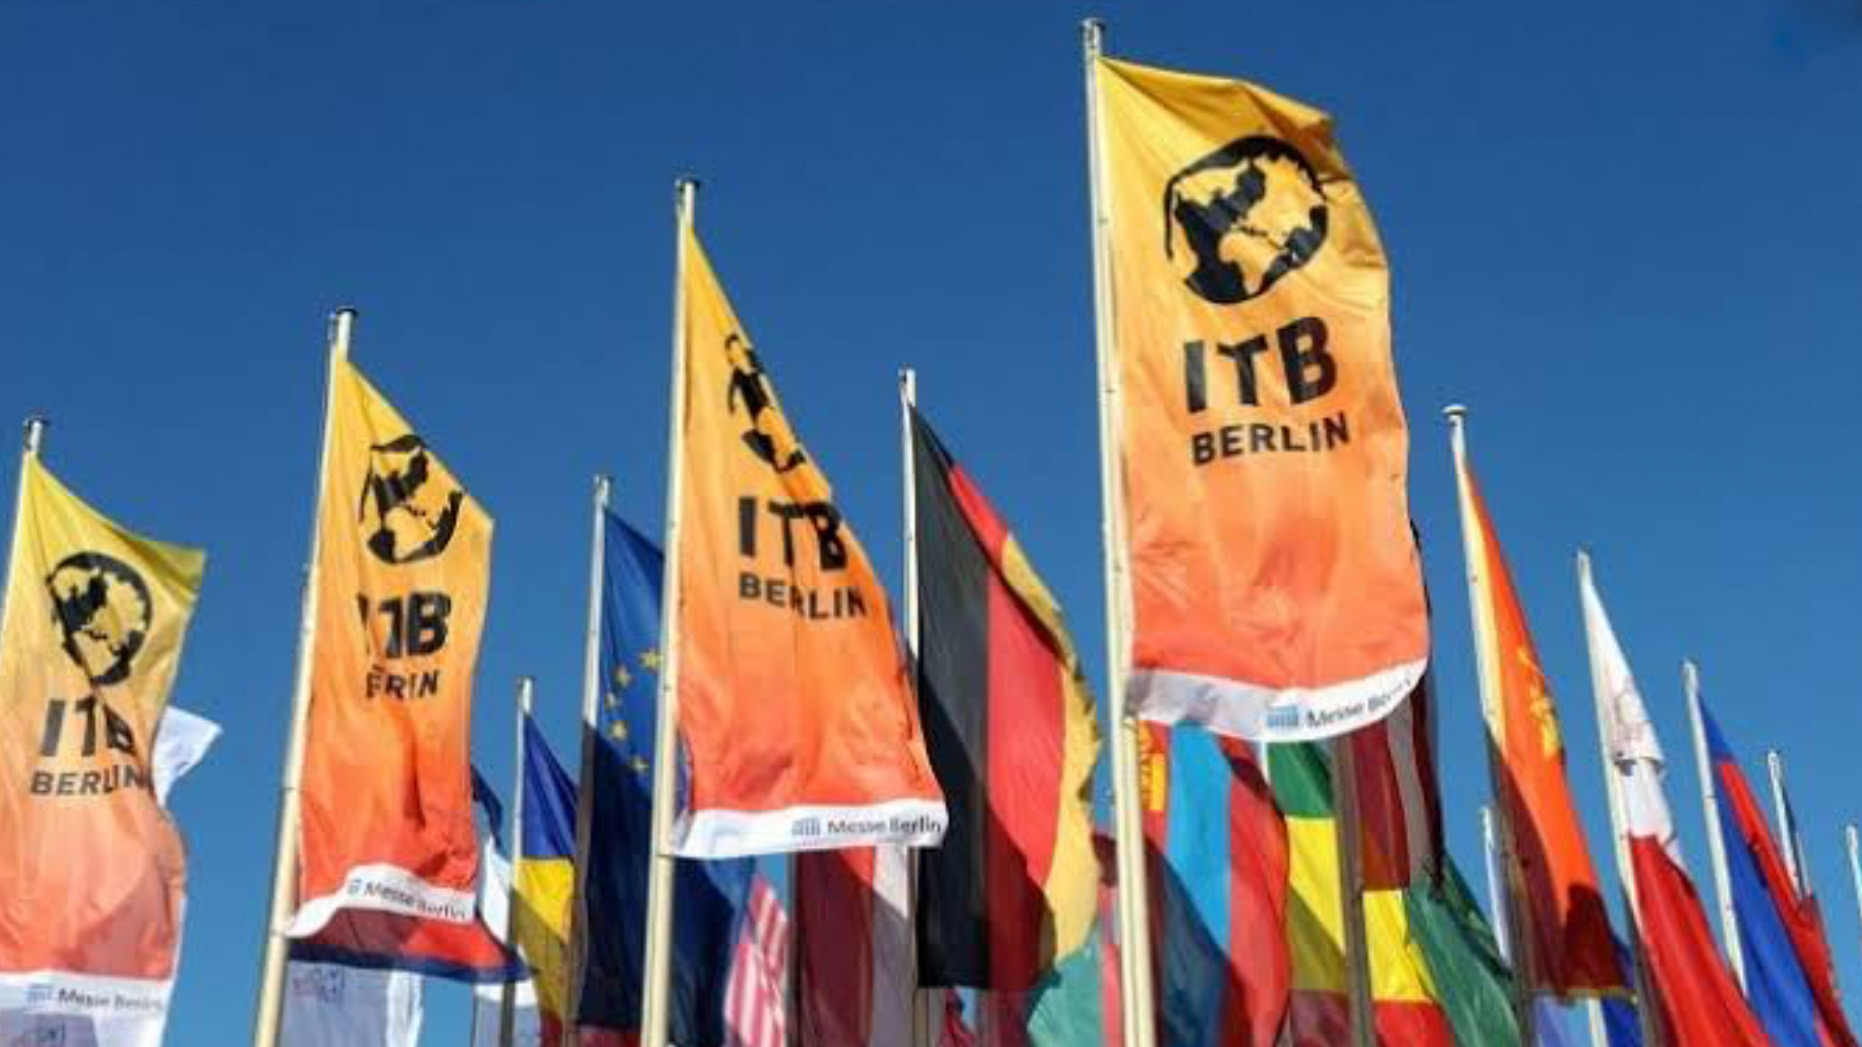 ITB Berlin iptal edildi!